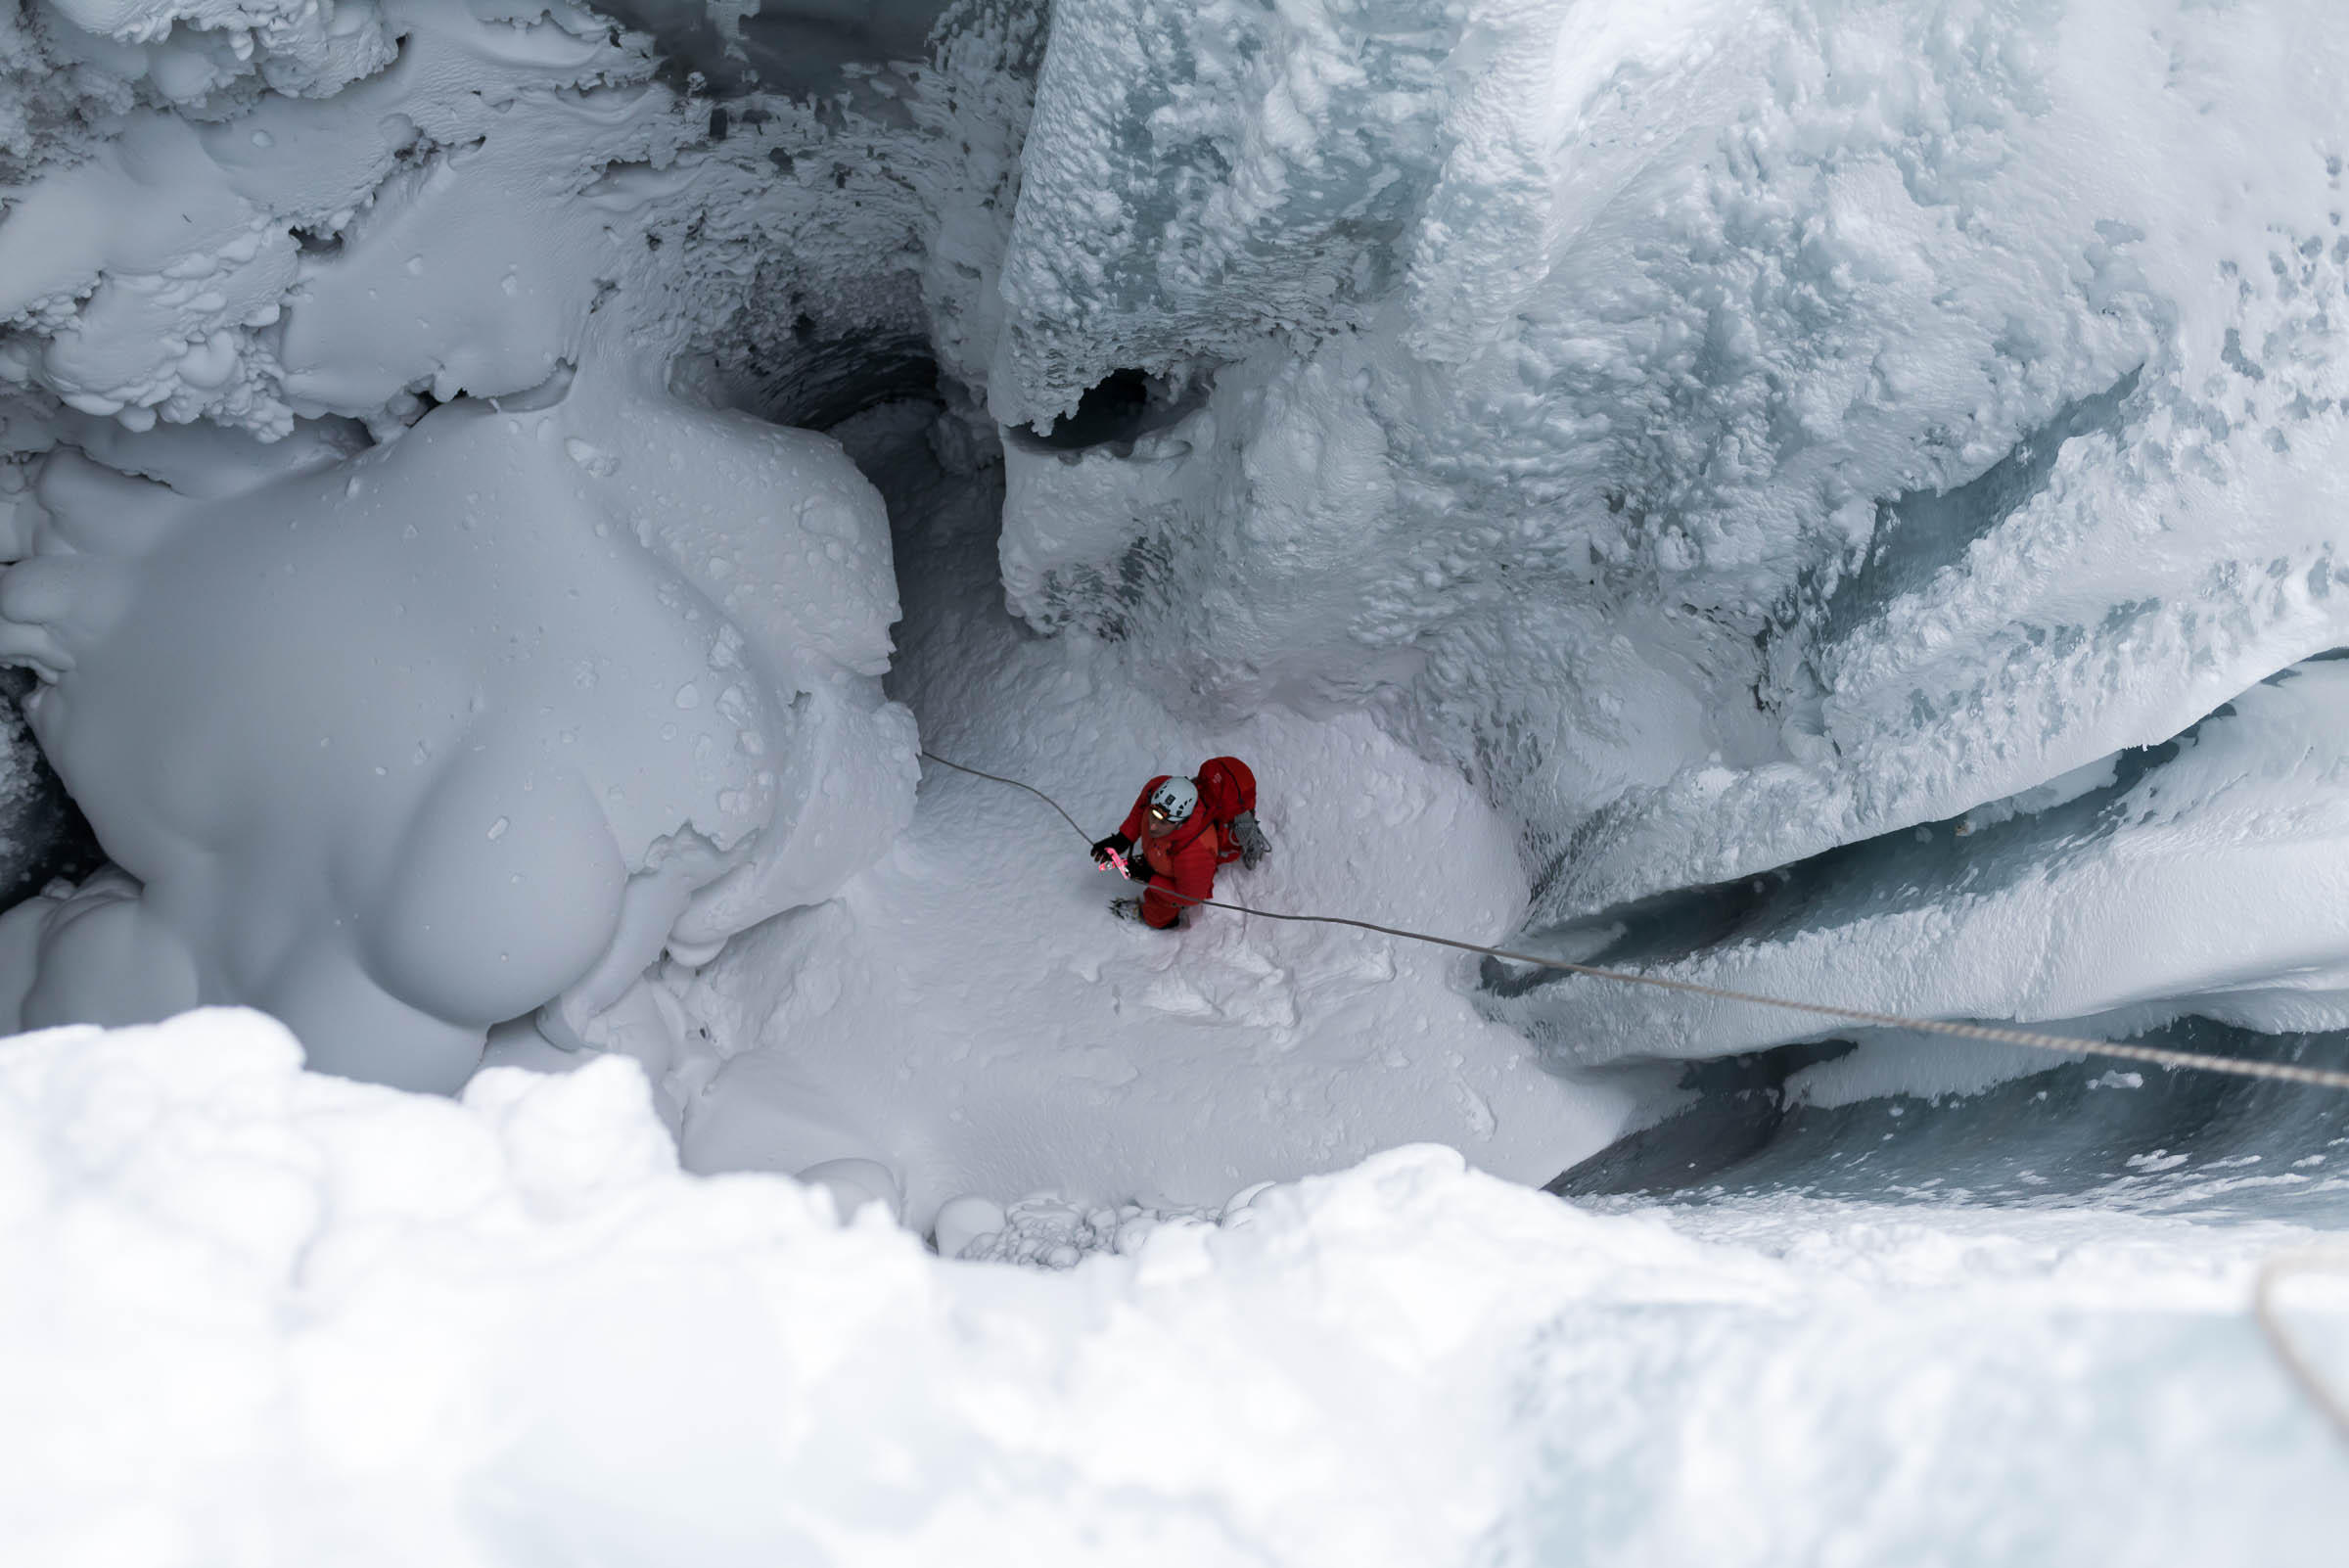 系上绳索攀援而下50米，抵达一片雪地。这之后便是黑洞洞的了。